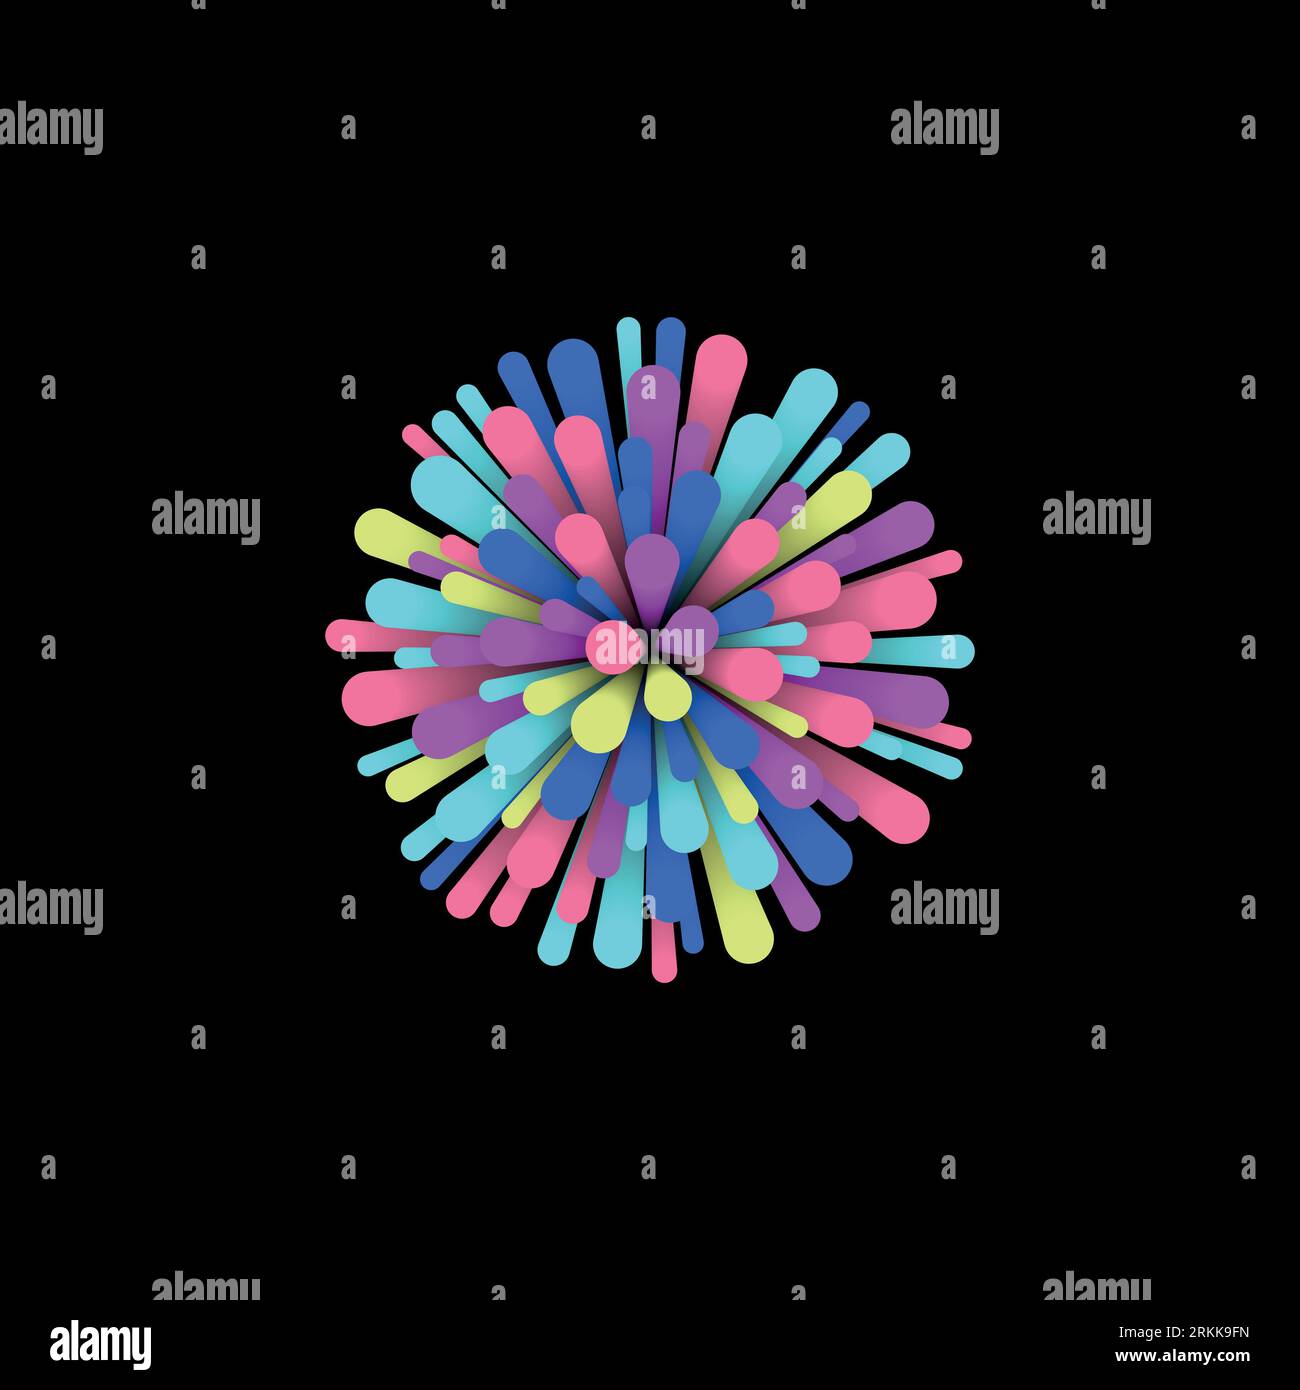 Lignes mattes 3d néon colorées de différentes tailles. Composition abstraite avec des lignes volantes ou d'explosion multicolores. Forme de fond vectoriel de cercle. Illustration de Vecteur